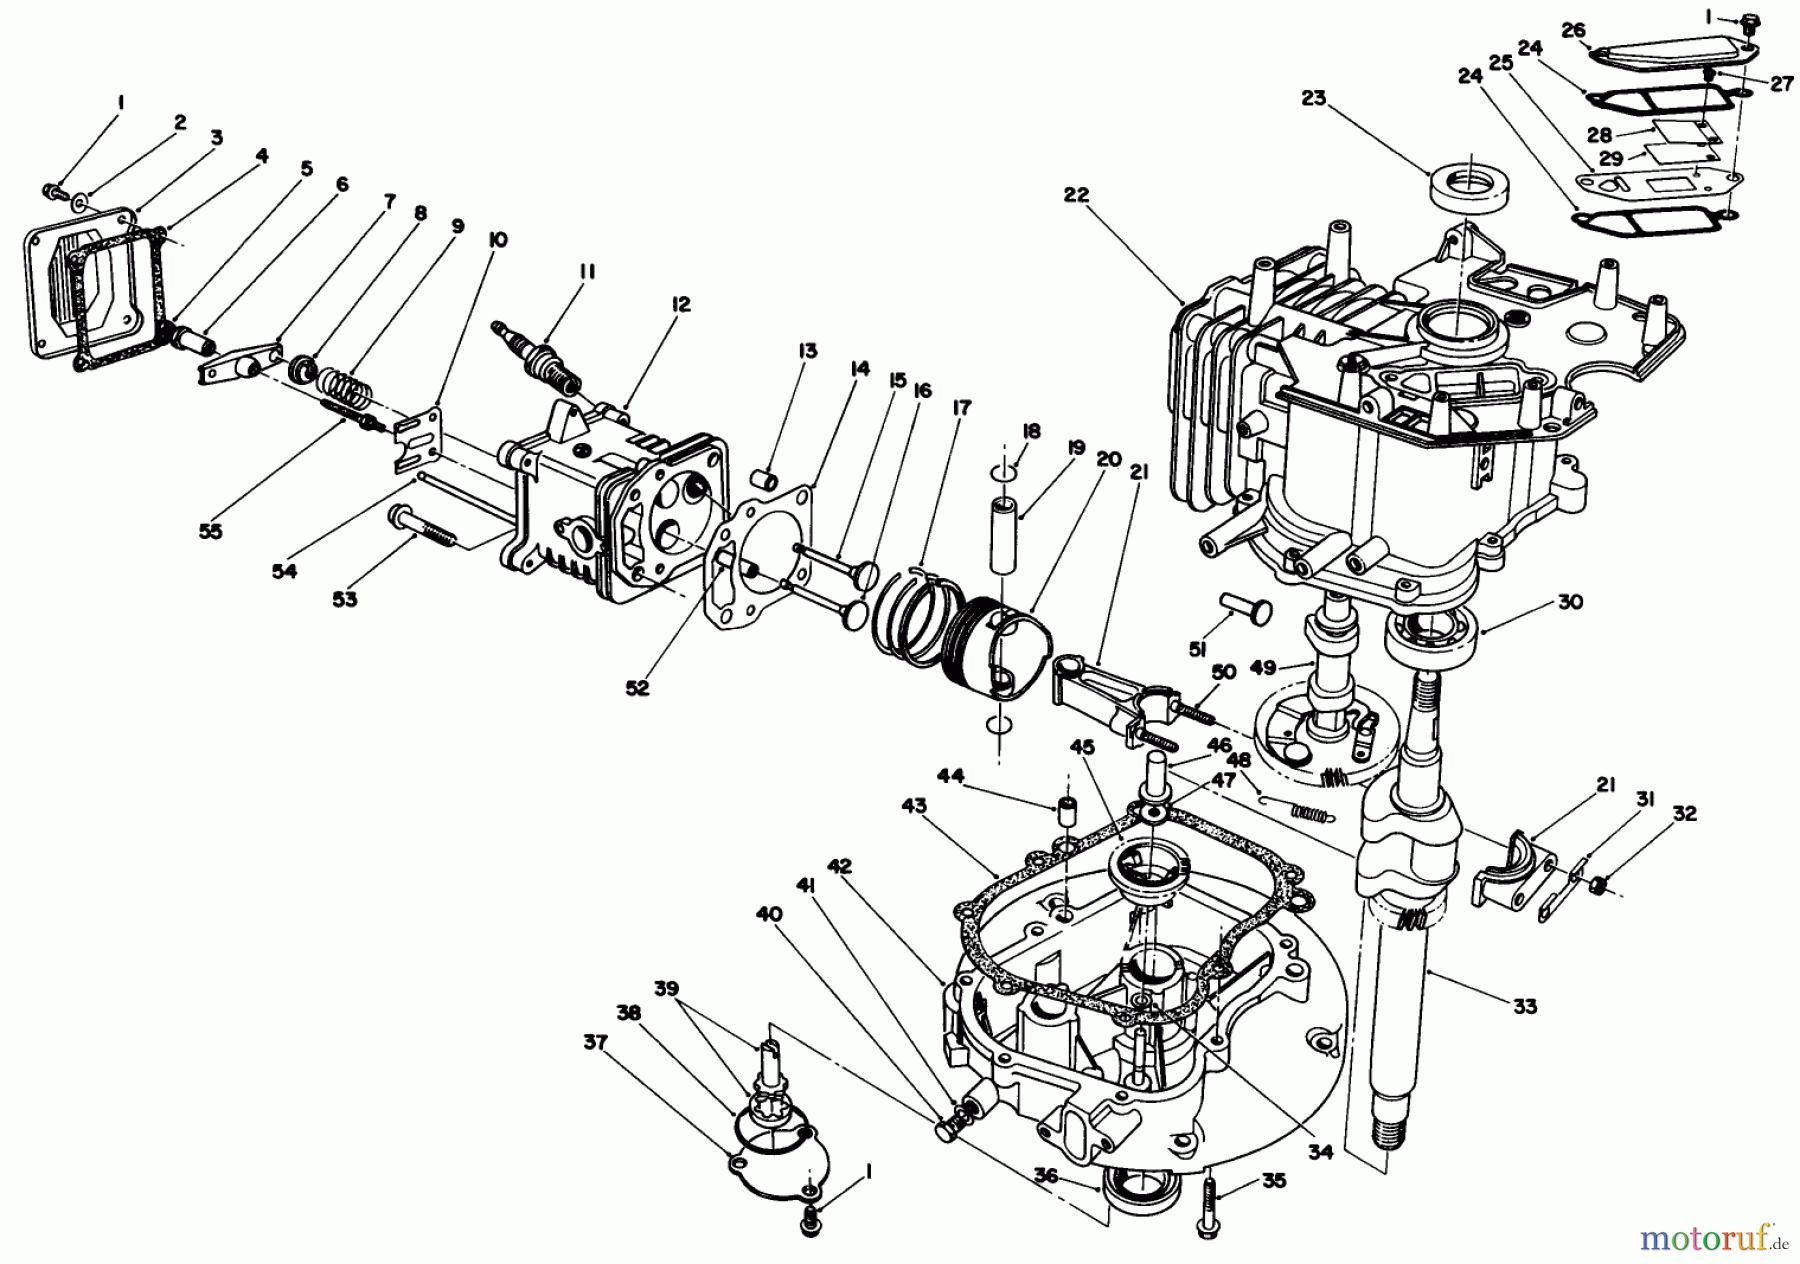  Toro Neu Mowers, Walk-Behind Seite 1 20624 - Toro Lawnmower, 1987 (7000001-7999999) ENGINE ASSEMBLY (MODEL NO. VMF5 & VMG6)